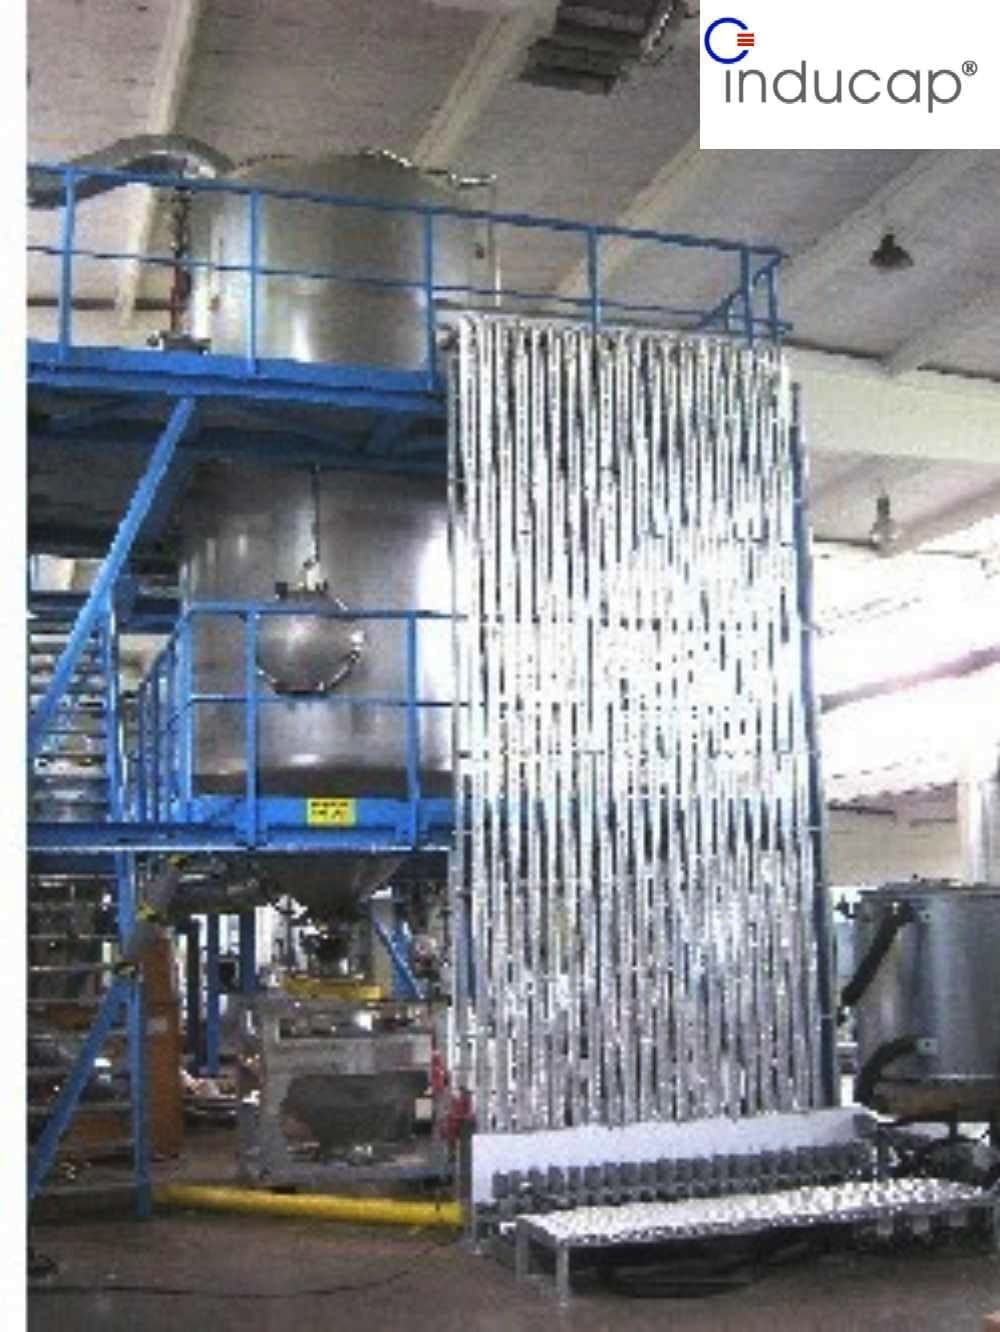 Produktionsanlage, Vertropfungsturm HiDrip®-COOLING Verfahren, © Inducap 2012